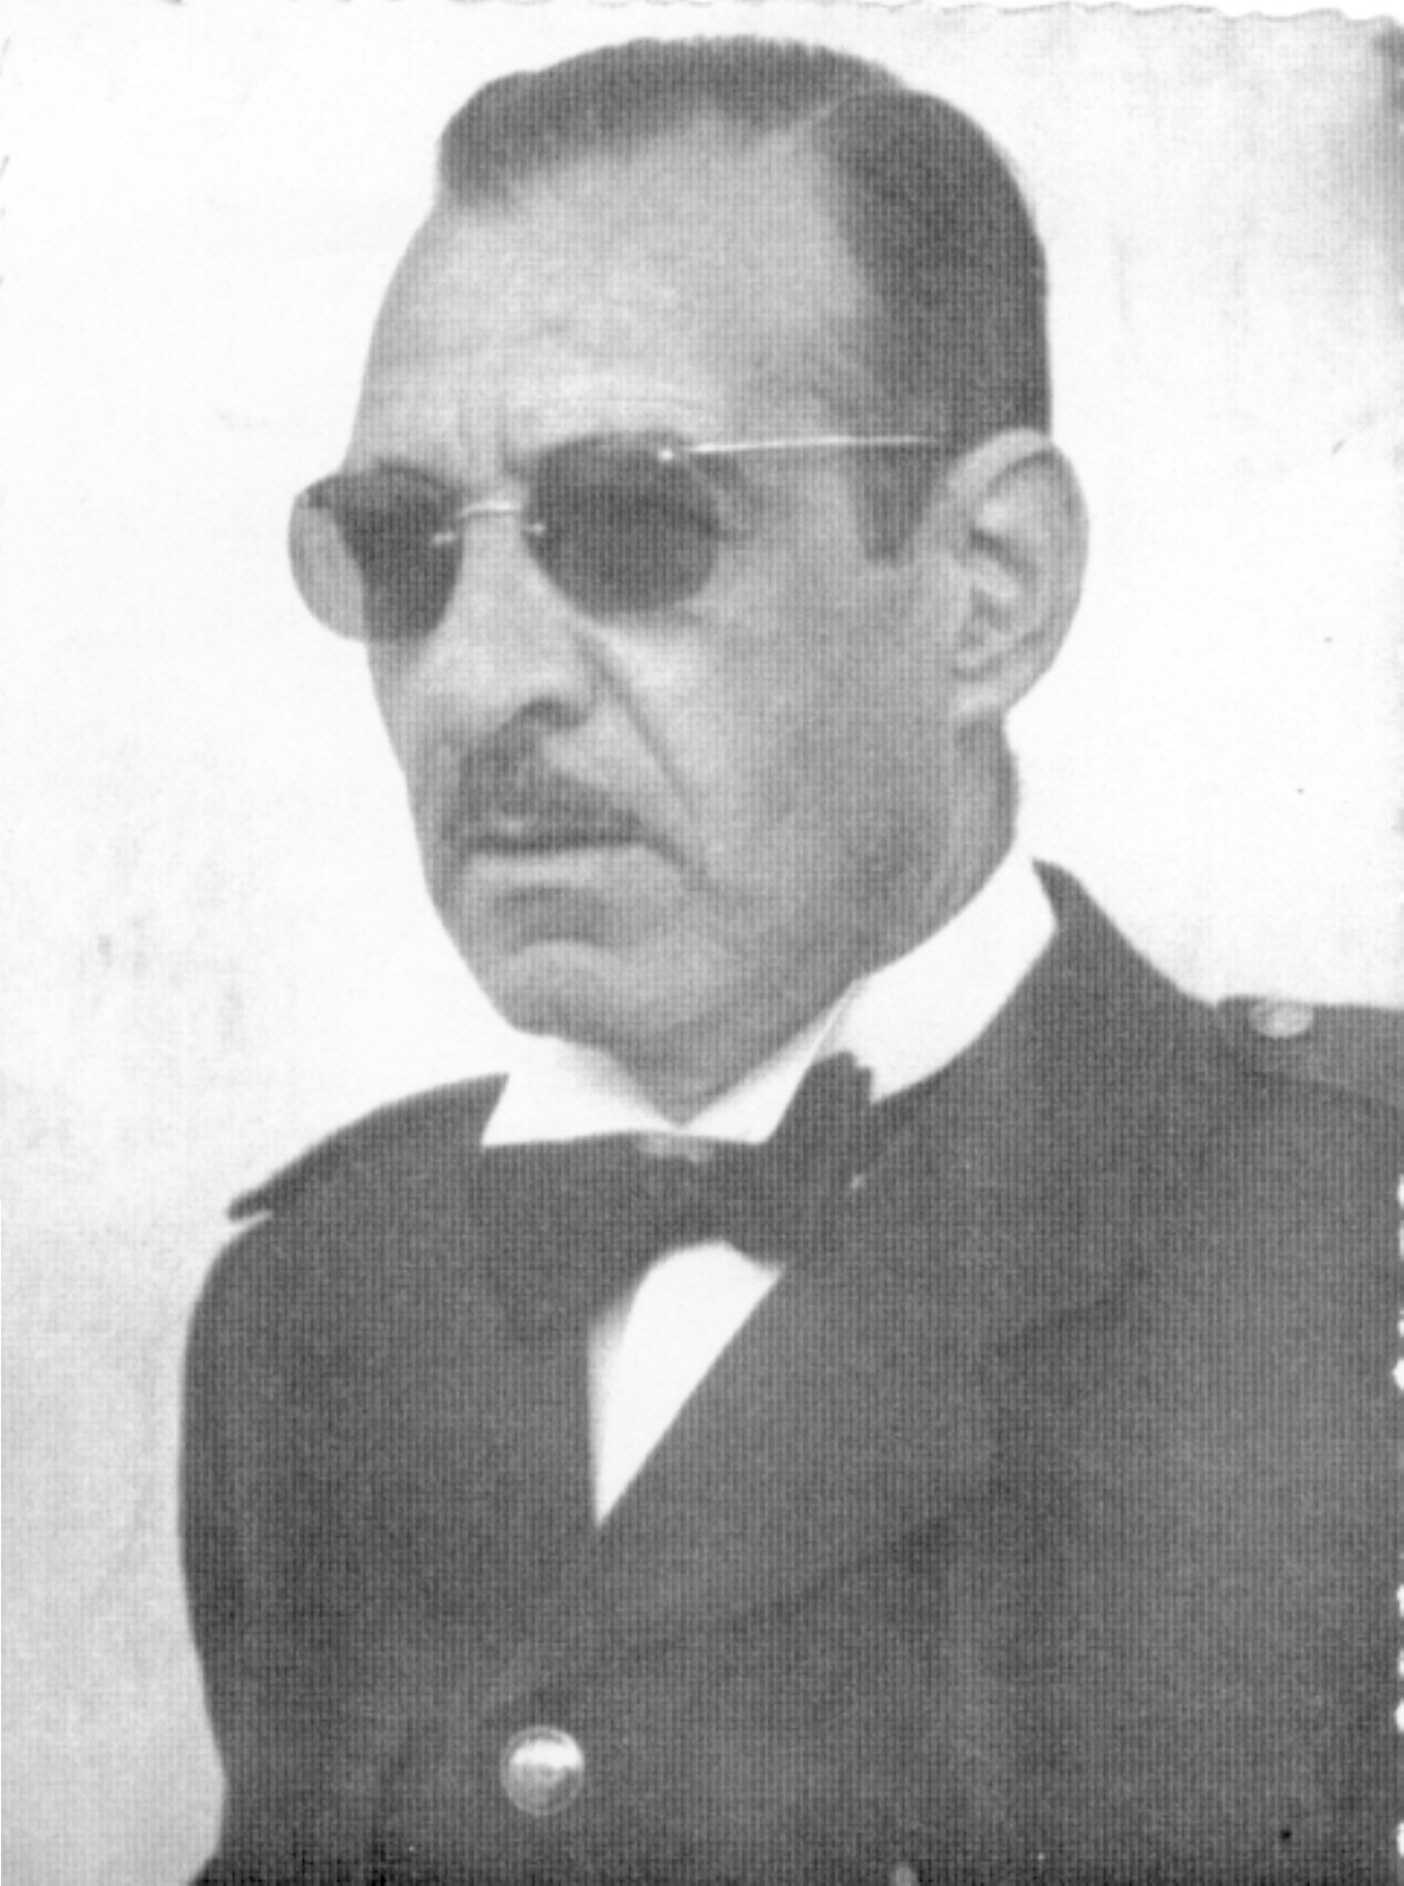 D. José Albúger Cuenca, eminente compositor
y director de la Banda Municipal durante varios años.